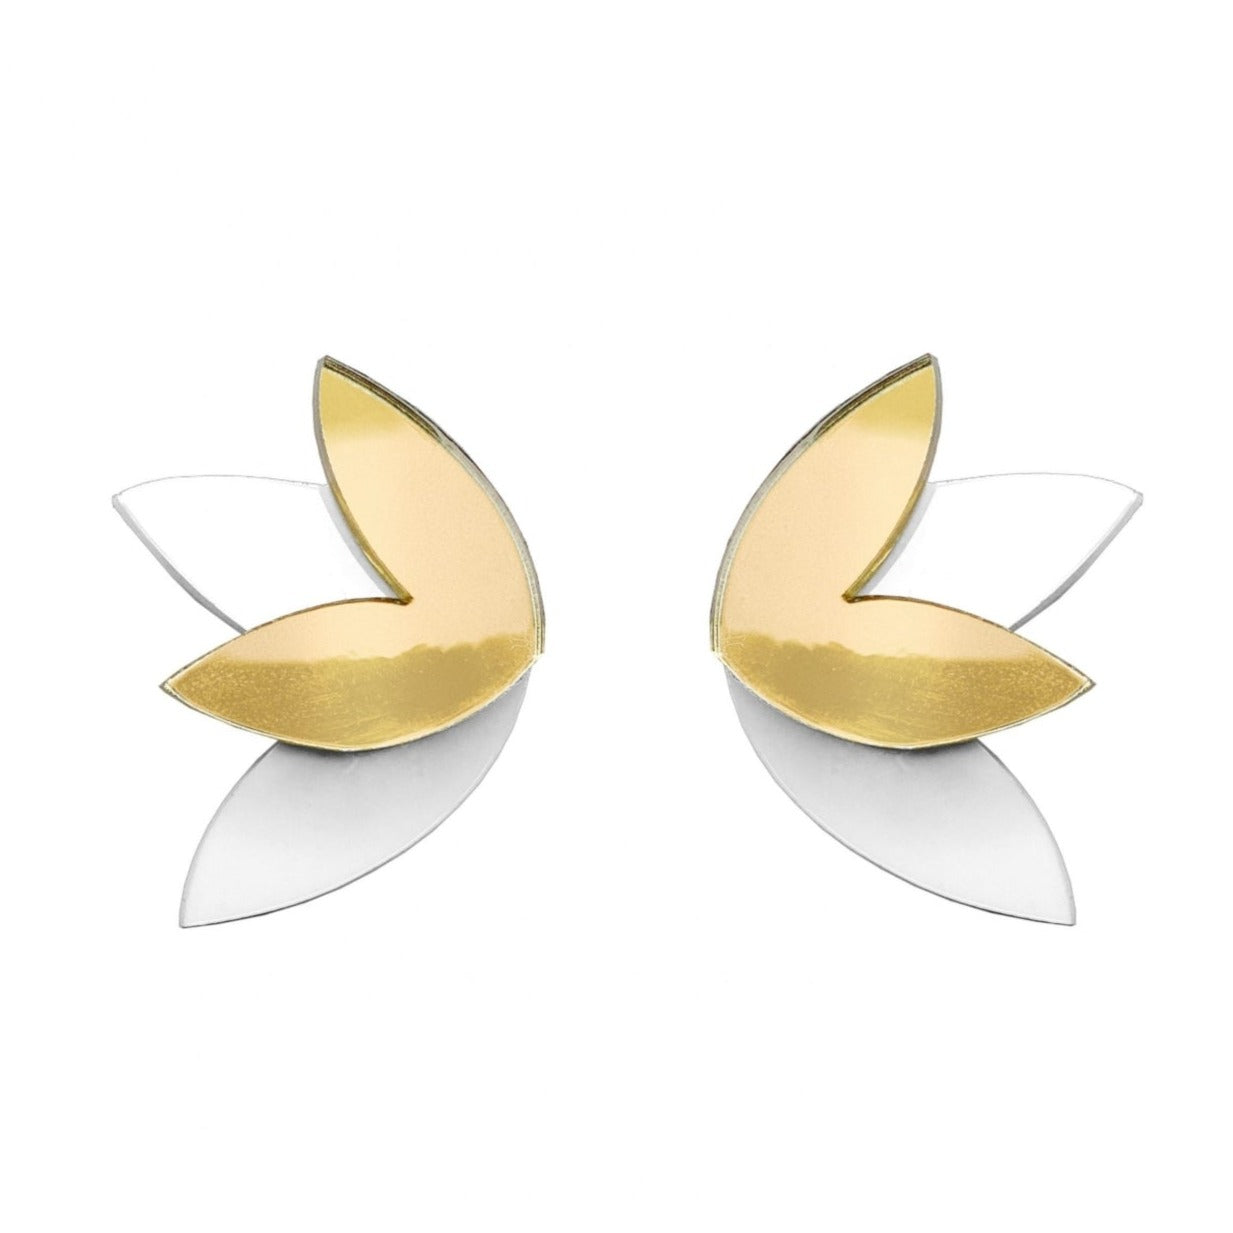 "The Golden Ear" Plexi Earrings